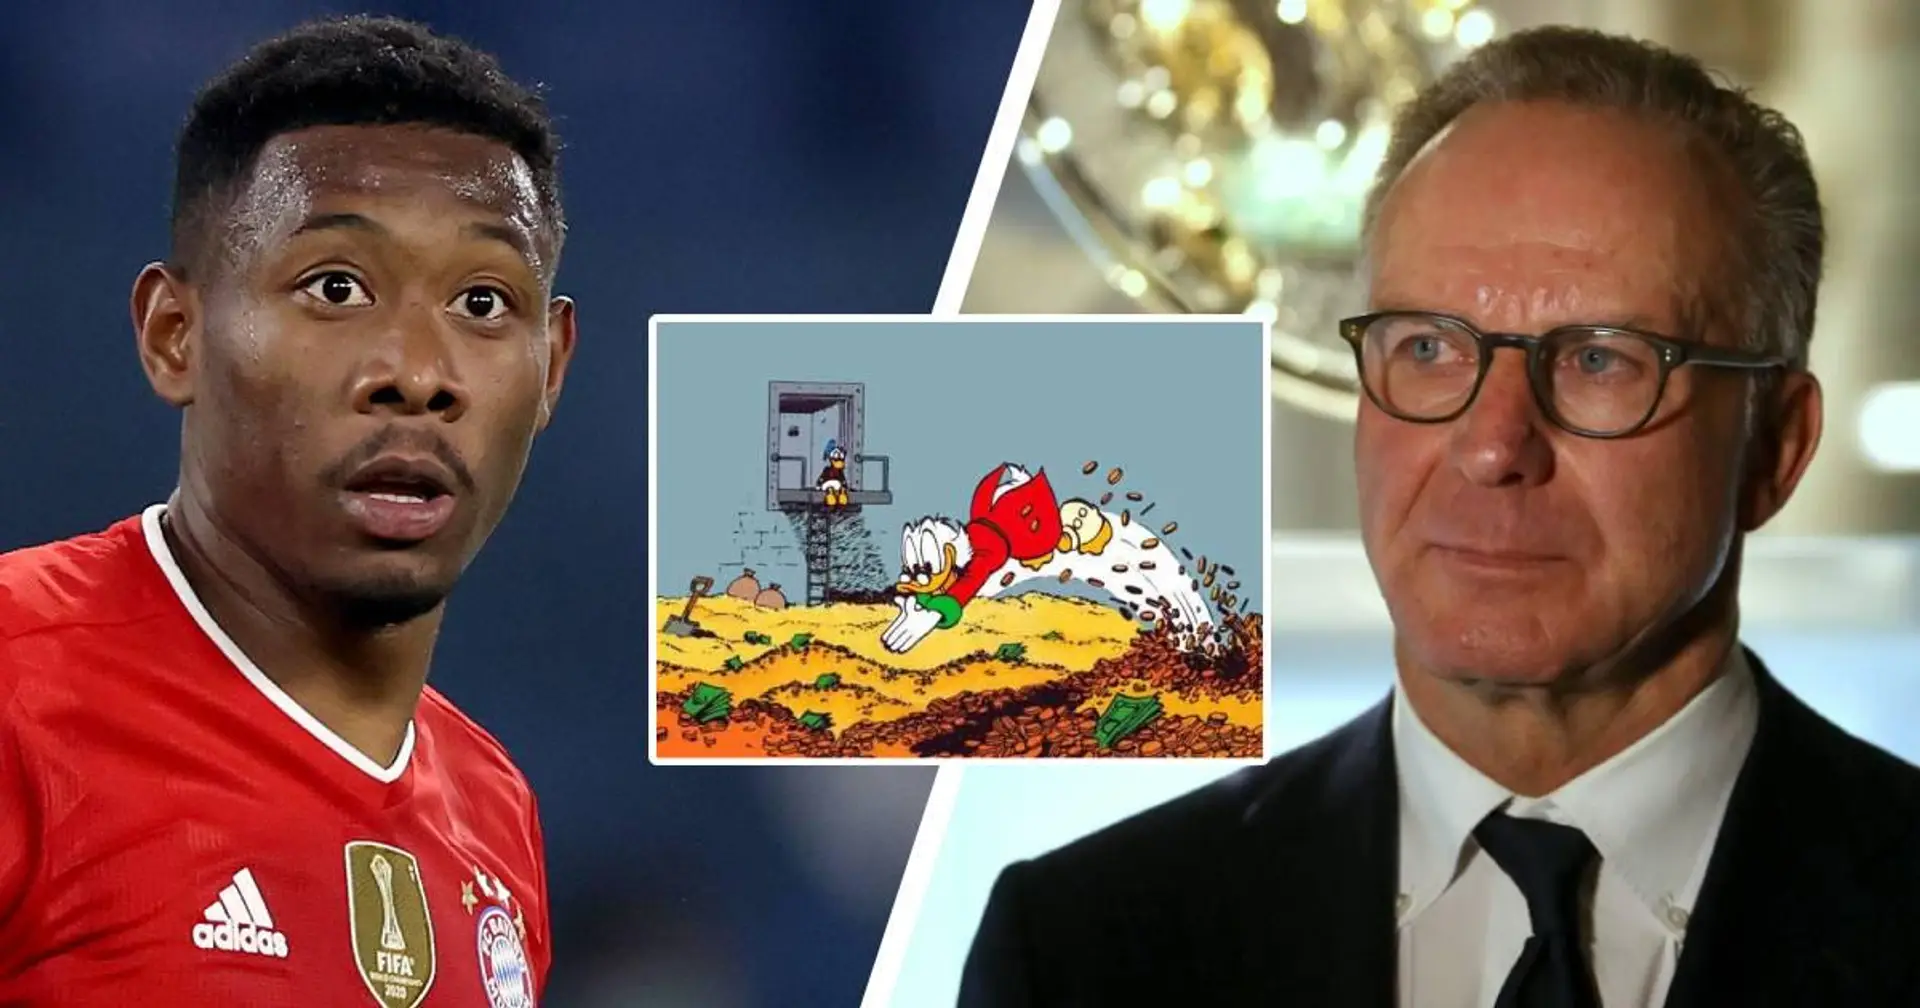 El director deportivo del Bayern, Rummenigge, critica a Alaba por irse y lo llama codicioso